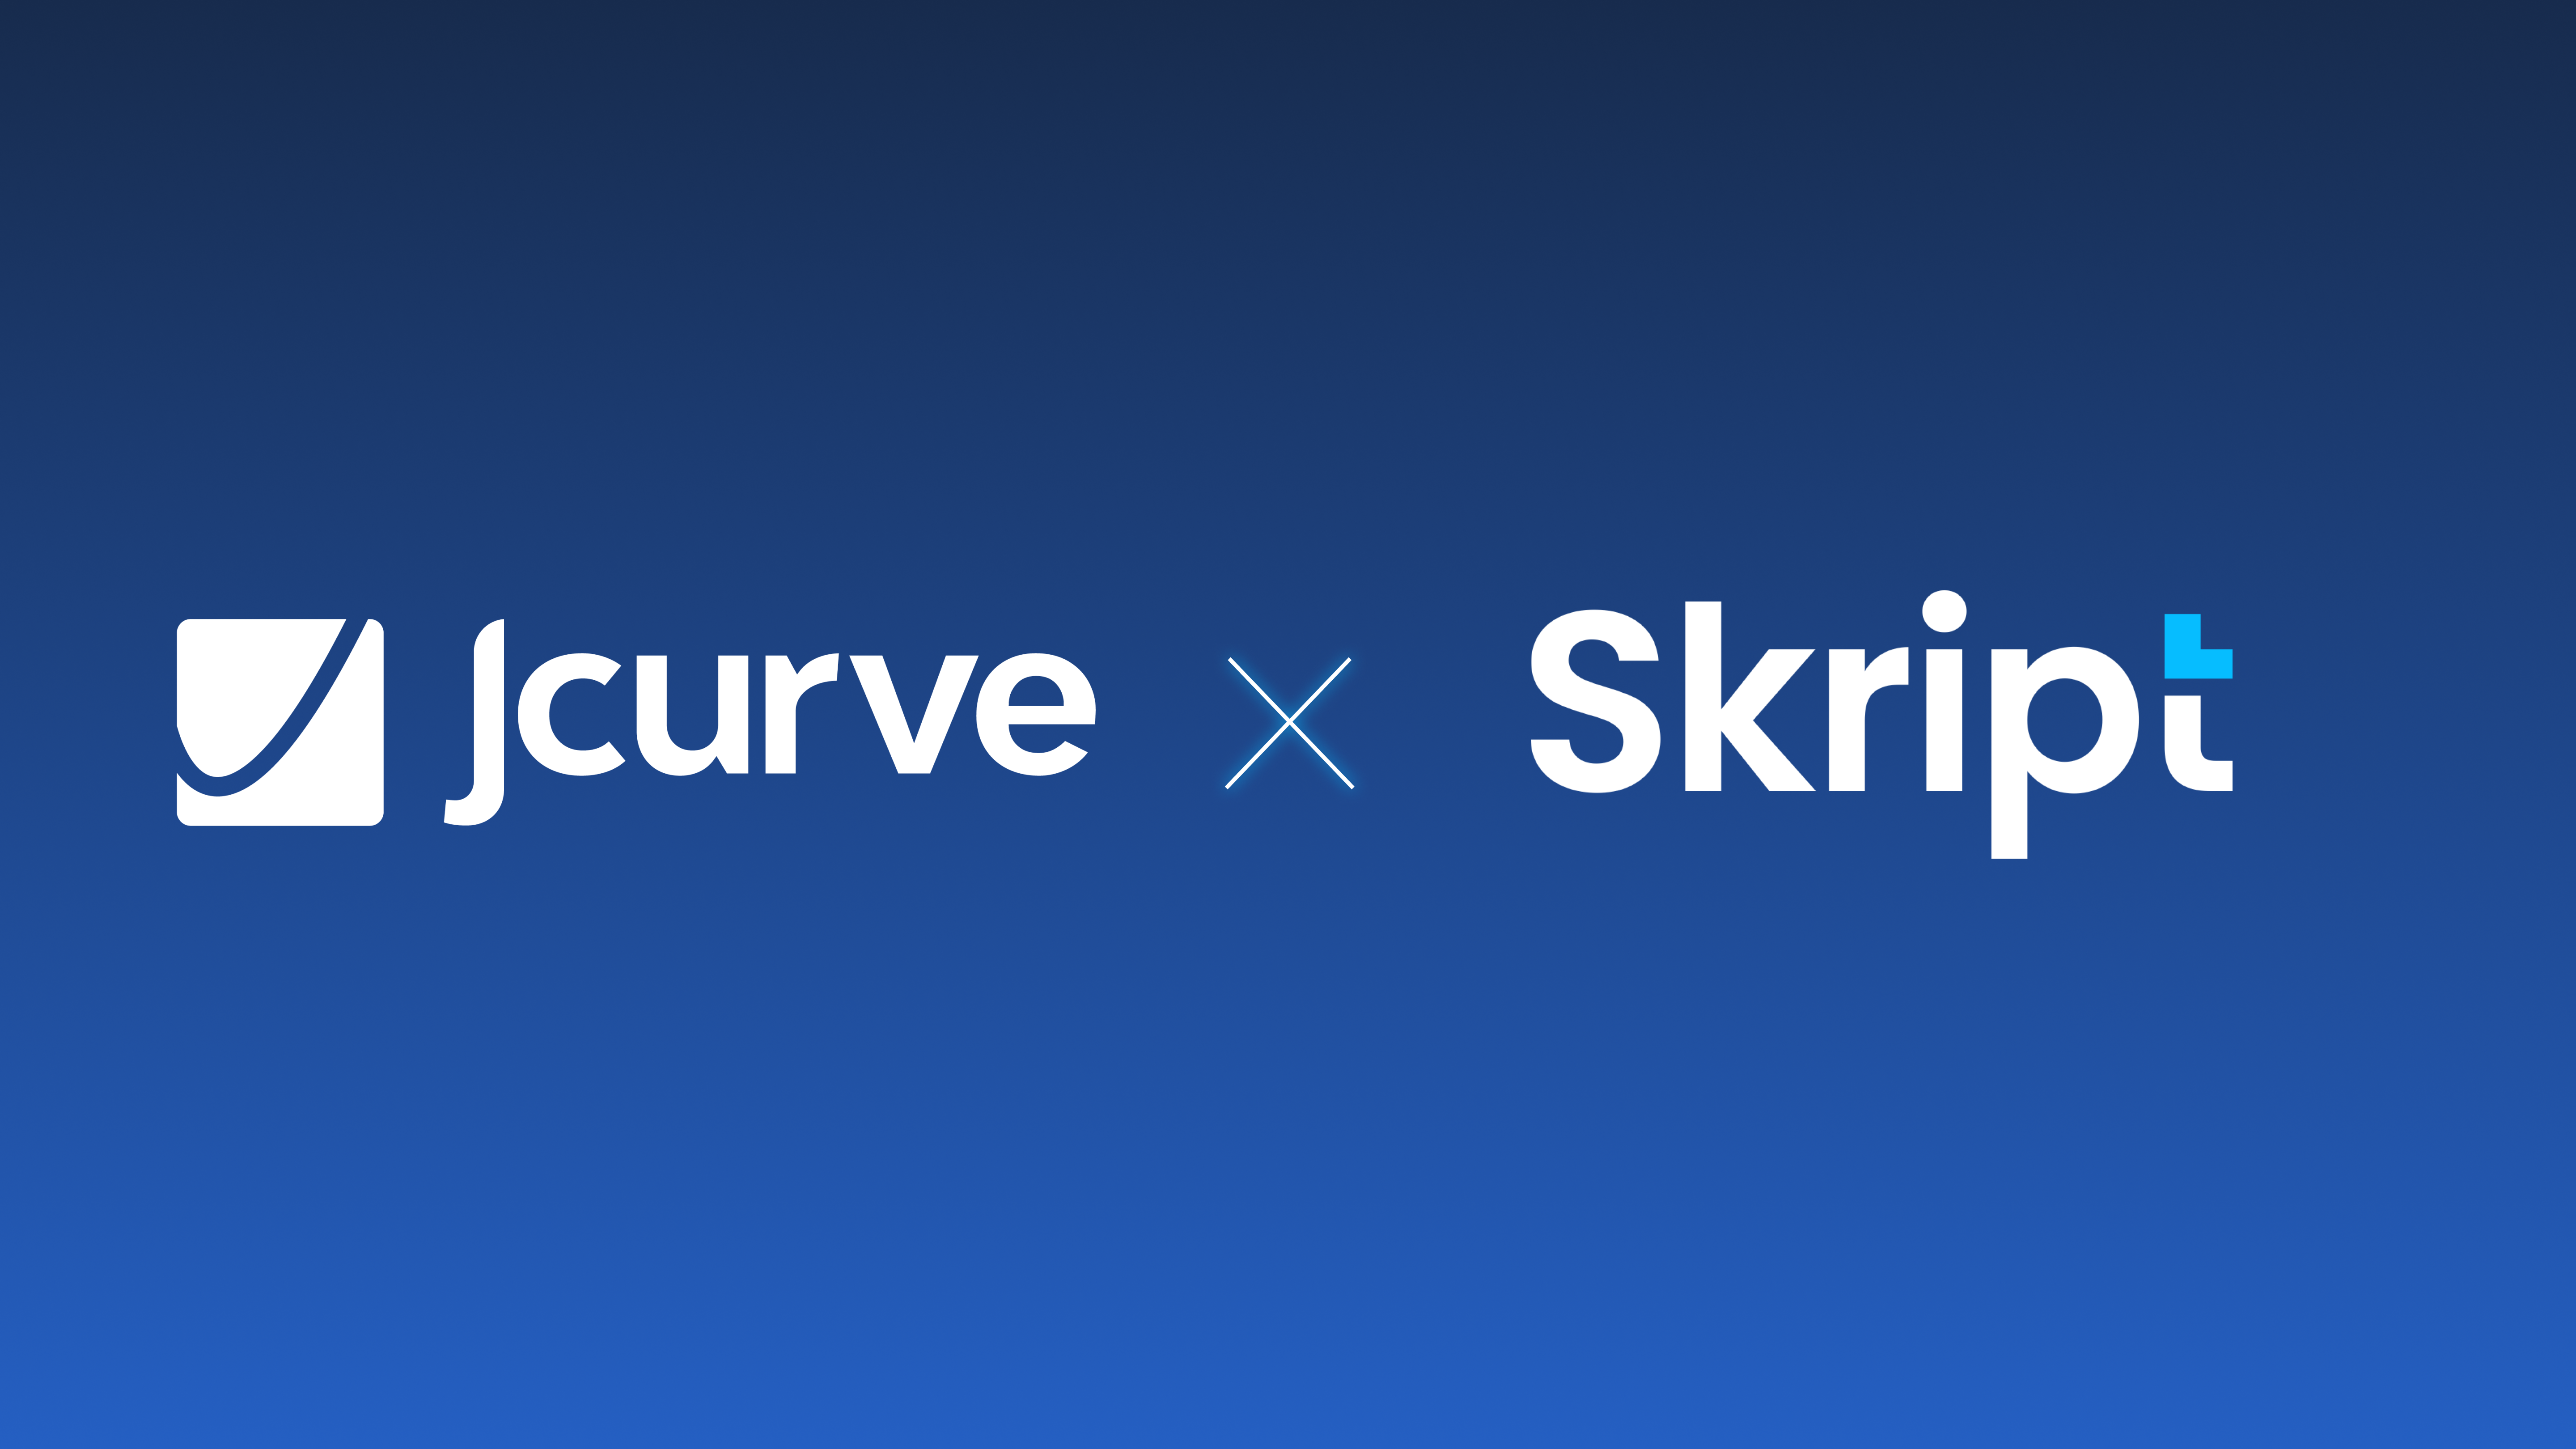 Jcurve Skript partnership